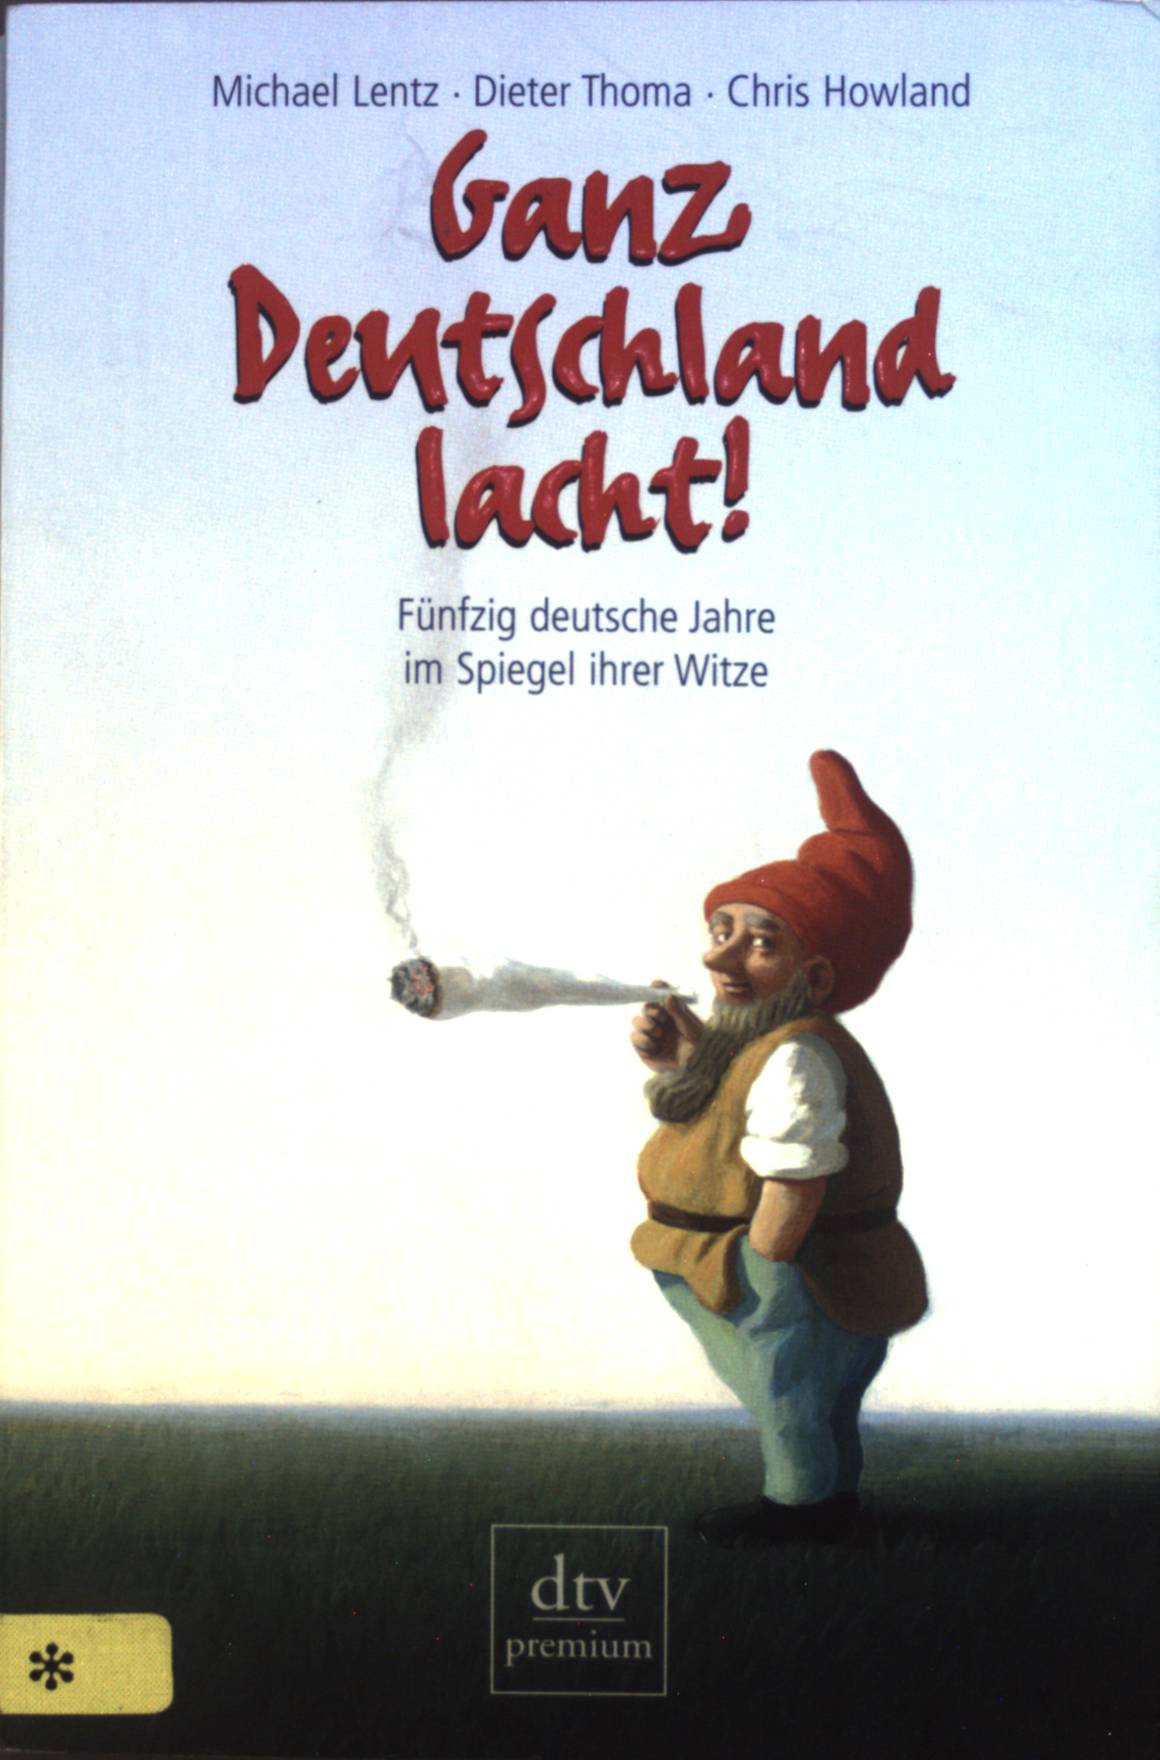 Ganz Deutschland lacht! : 50 deutsche Jahre im Spiegel ihrer Witze. - Lentz, Michael, Dieter Thoma Chris Howland u. a.